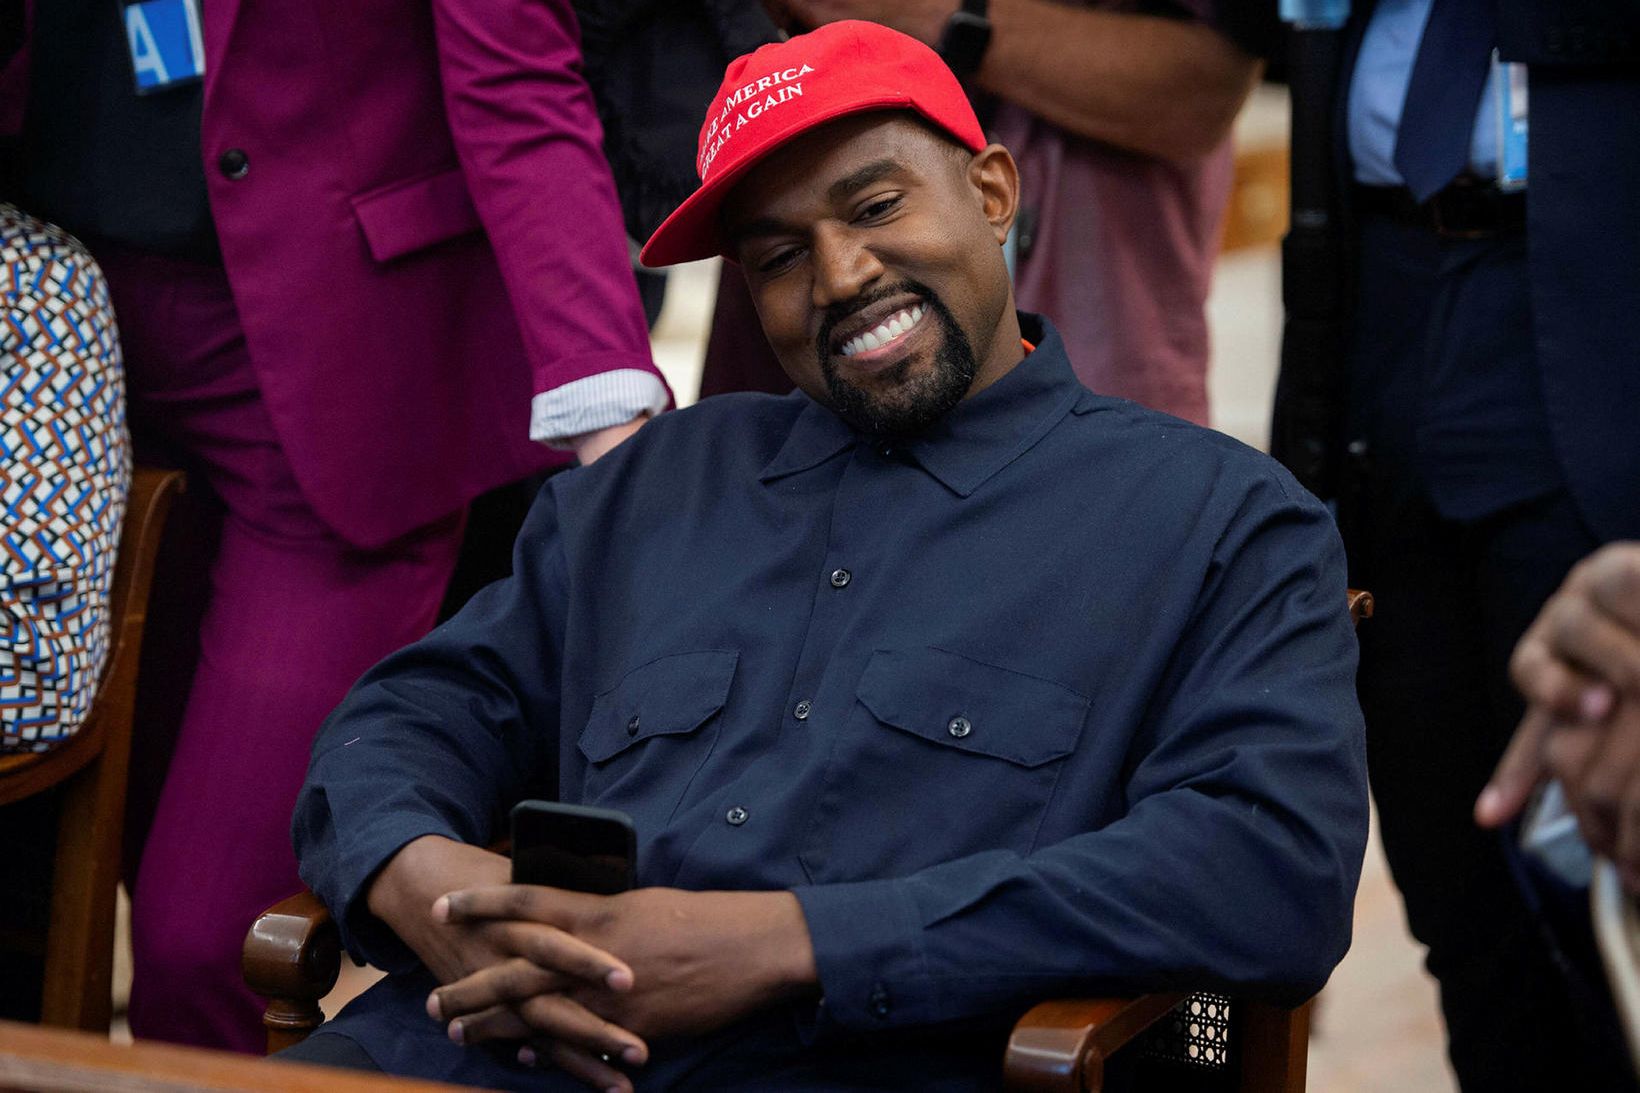 Kanye West segist vera alvara með að bjóða sig fram …